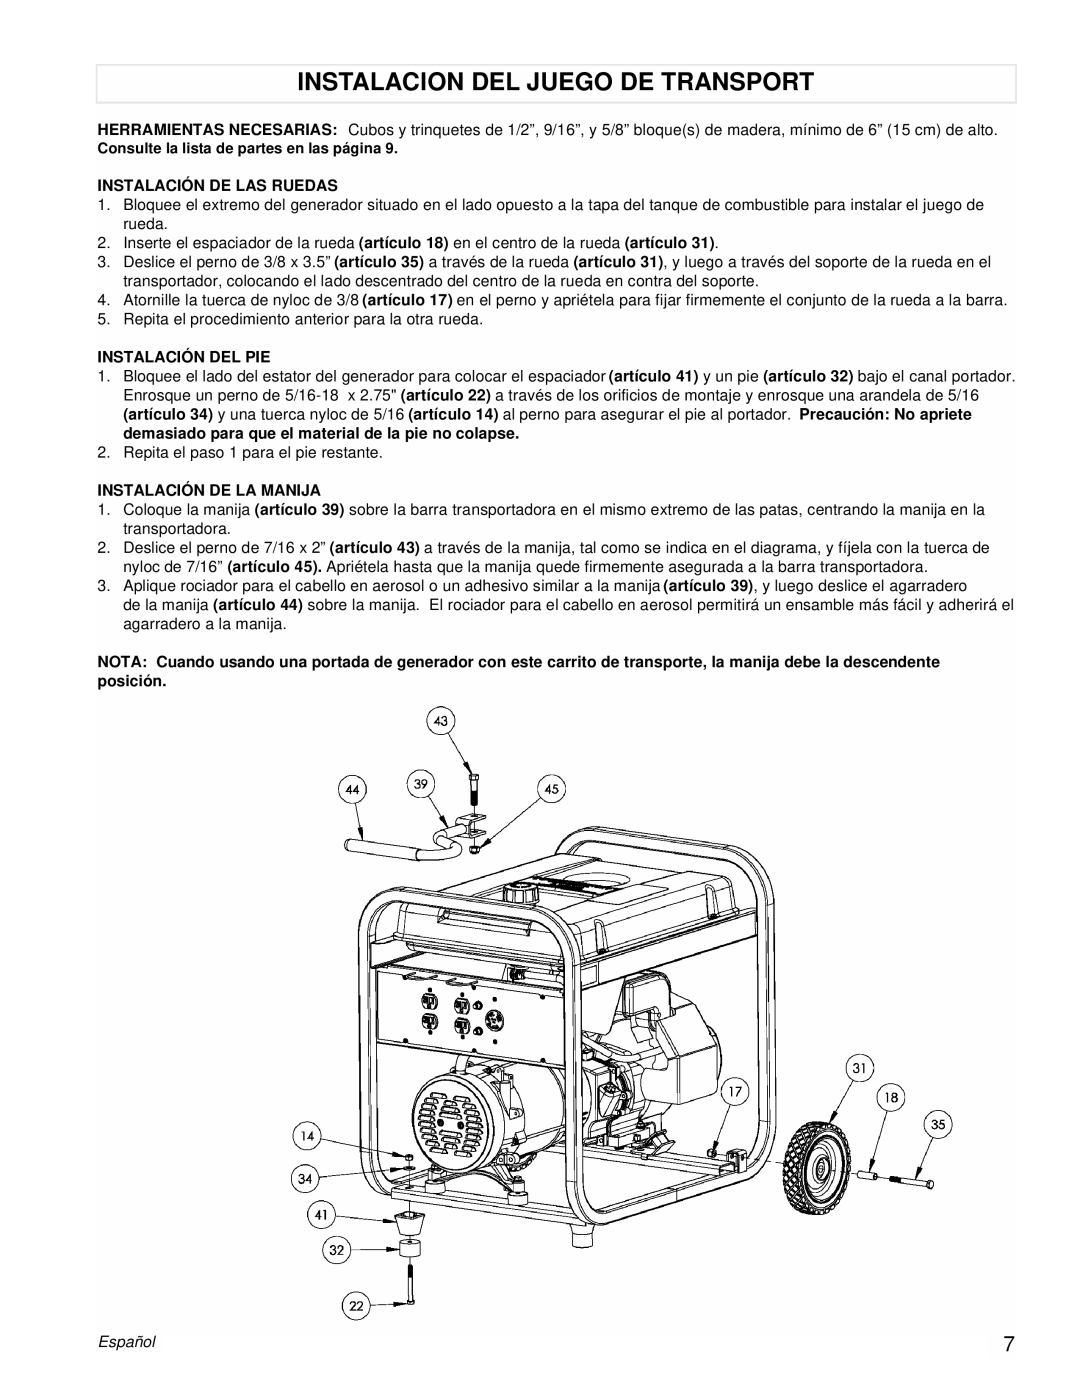 Powermate PM0525312.03 manual Instalacion Del Juego De Transport, Instalación De Las Ruedas, Instalación Del Pie, Español 